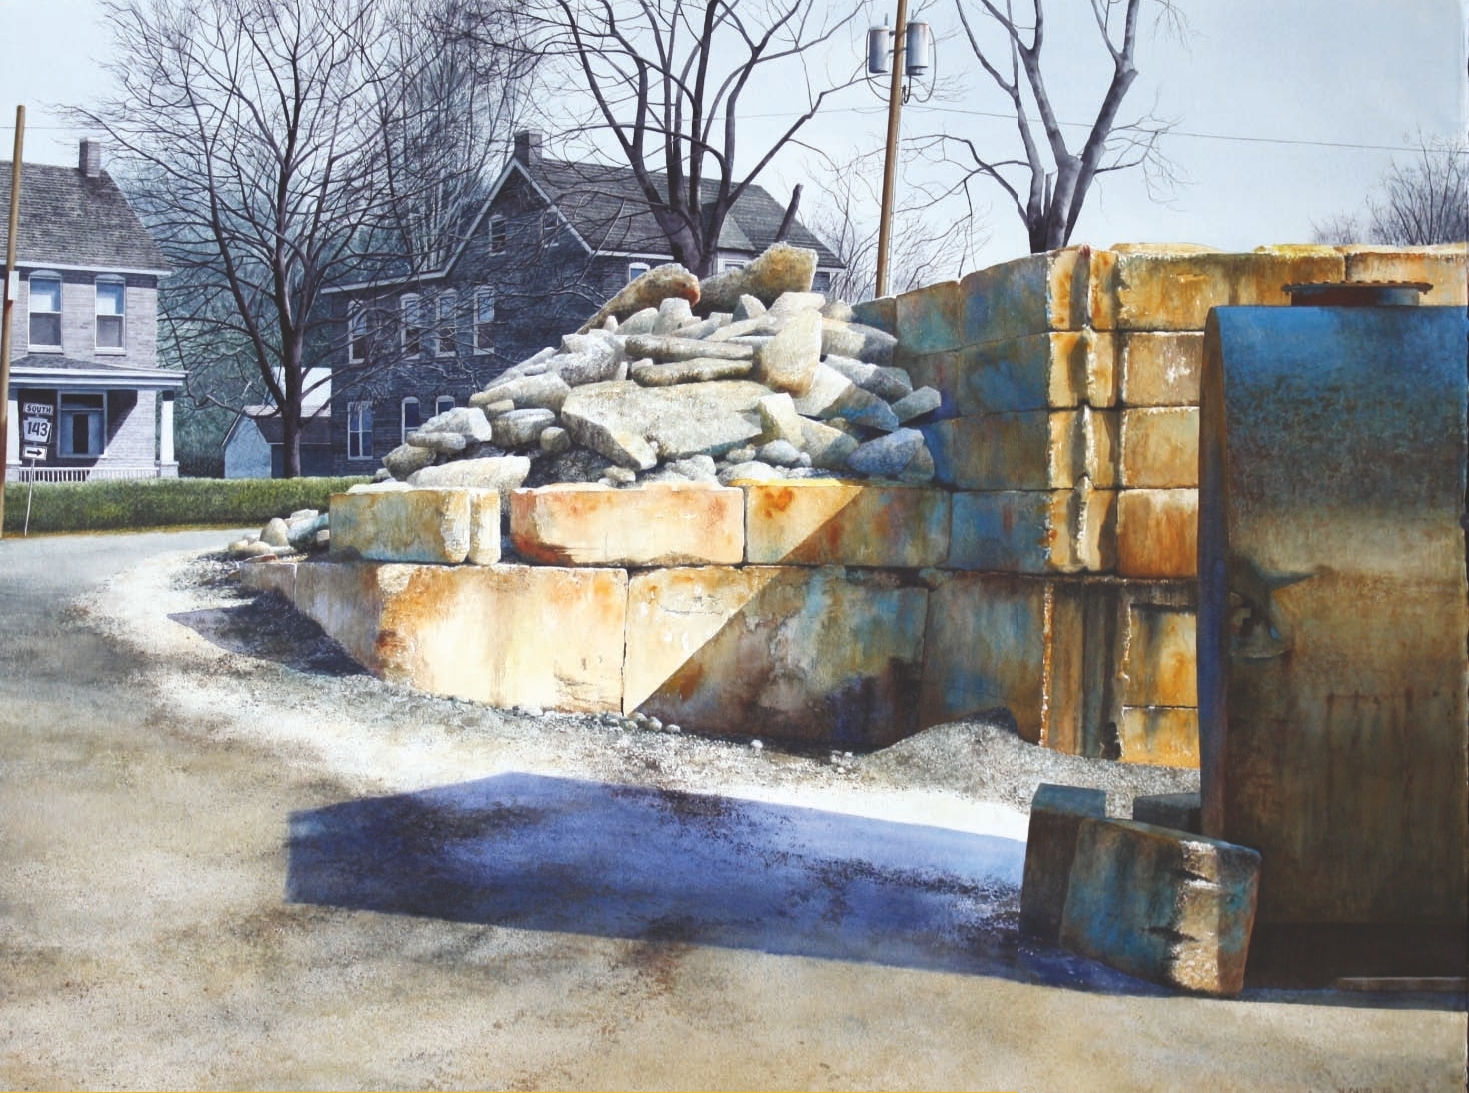 Concreto de Rahn, Virginville, Pensilvânia
2012, aquarela, 30 x 40. Acervo do artista.
